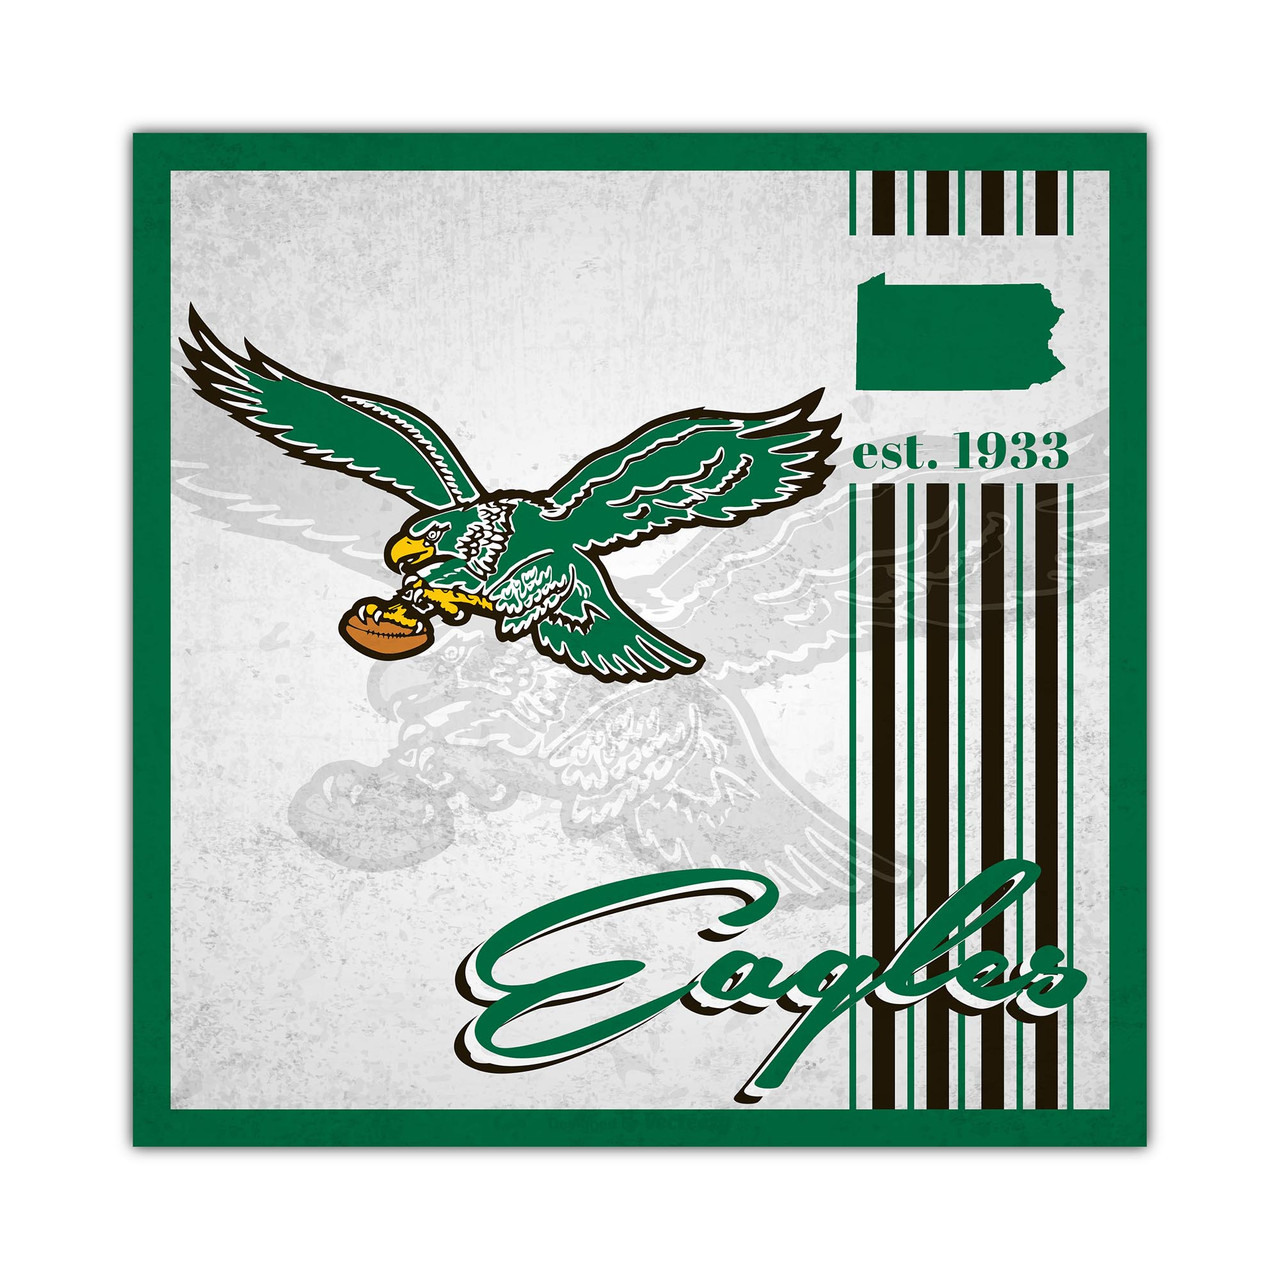 Philadelphia Eagles 10x10 Wood Album Design Sign